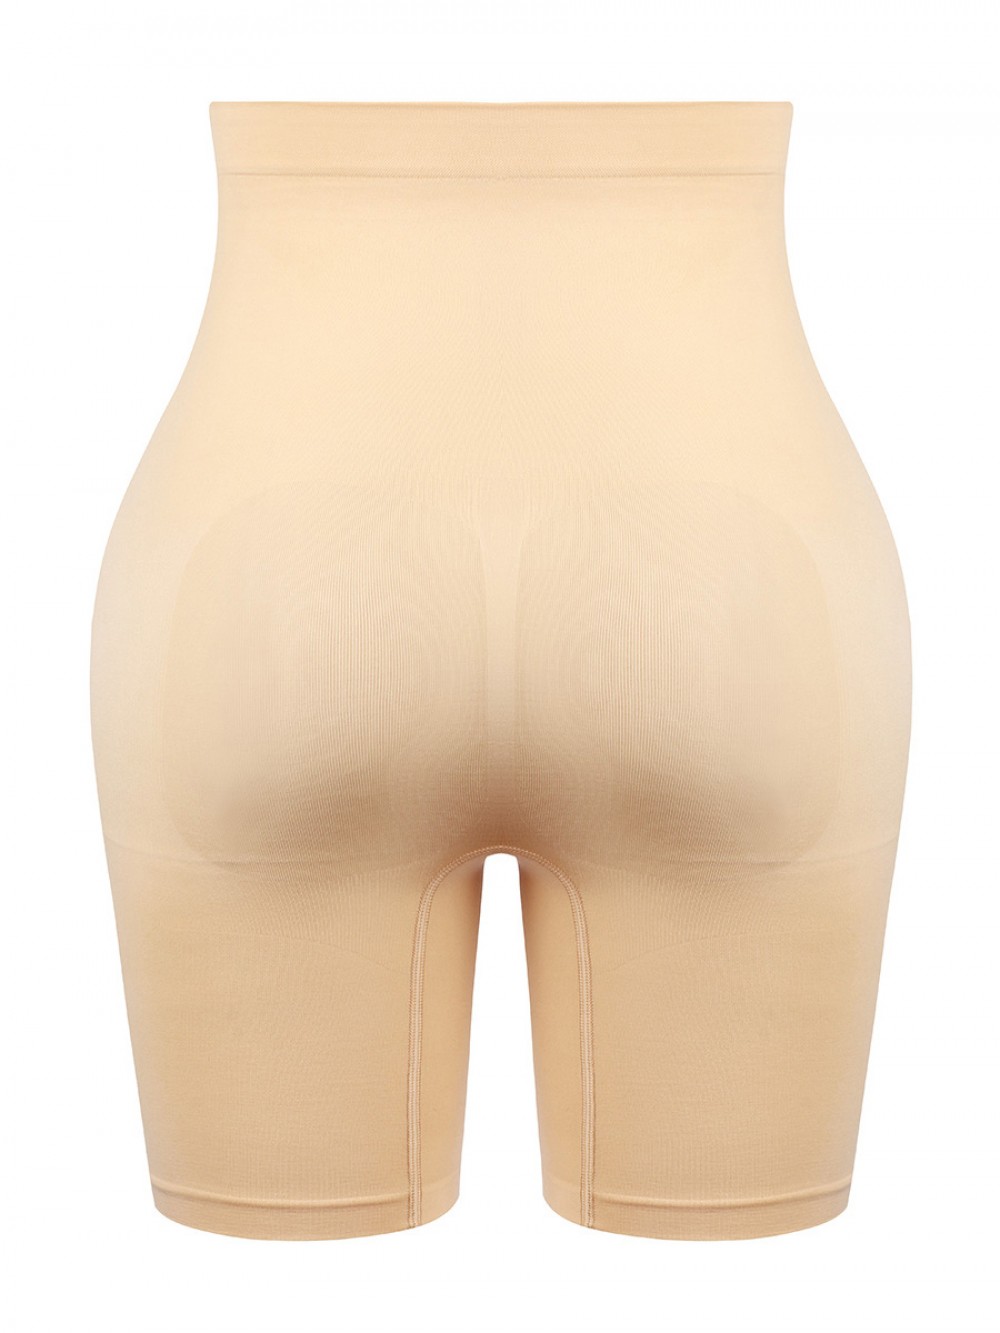 Apricot Large Size Seamless Shapewear Shorts Hourglass Figure